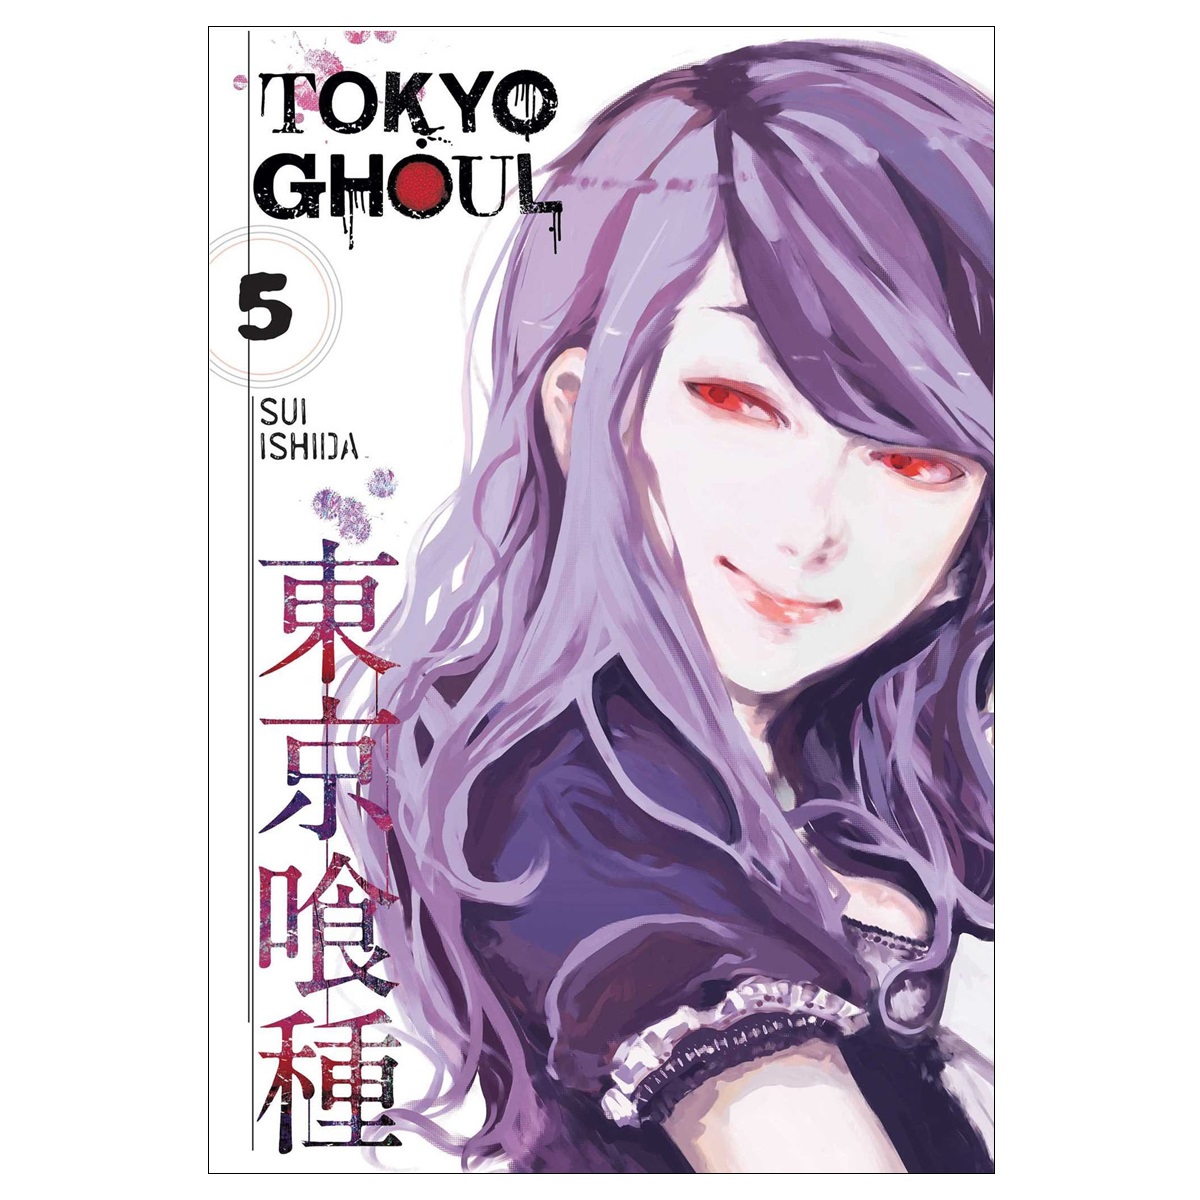 Tokyo Ghoul Vol. 5